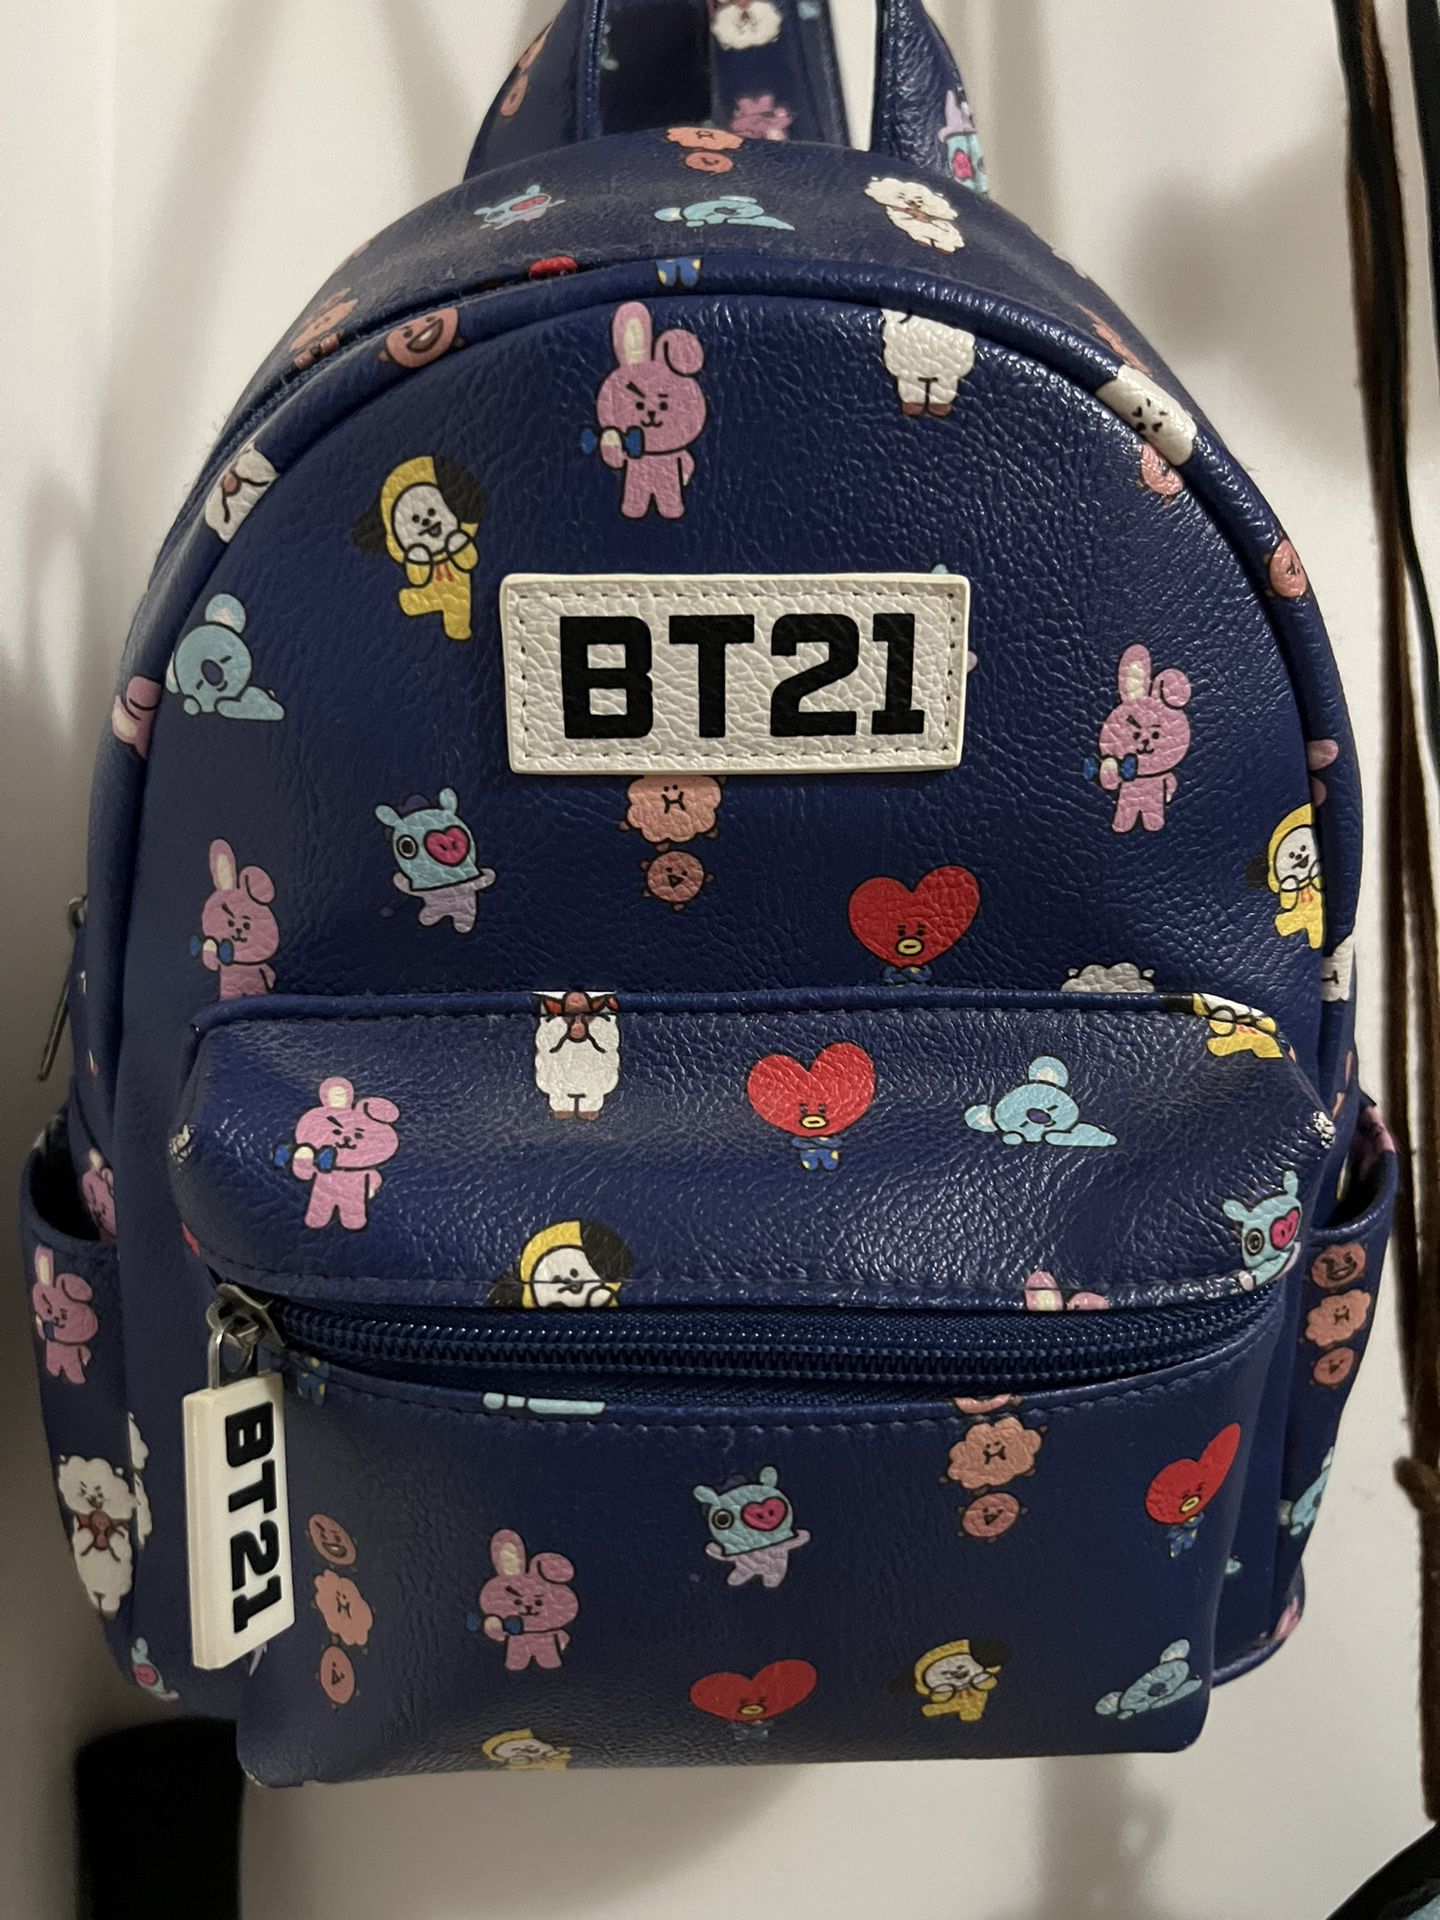 Bt21 Backpack 